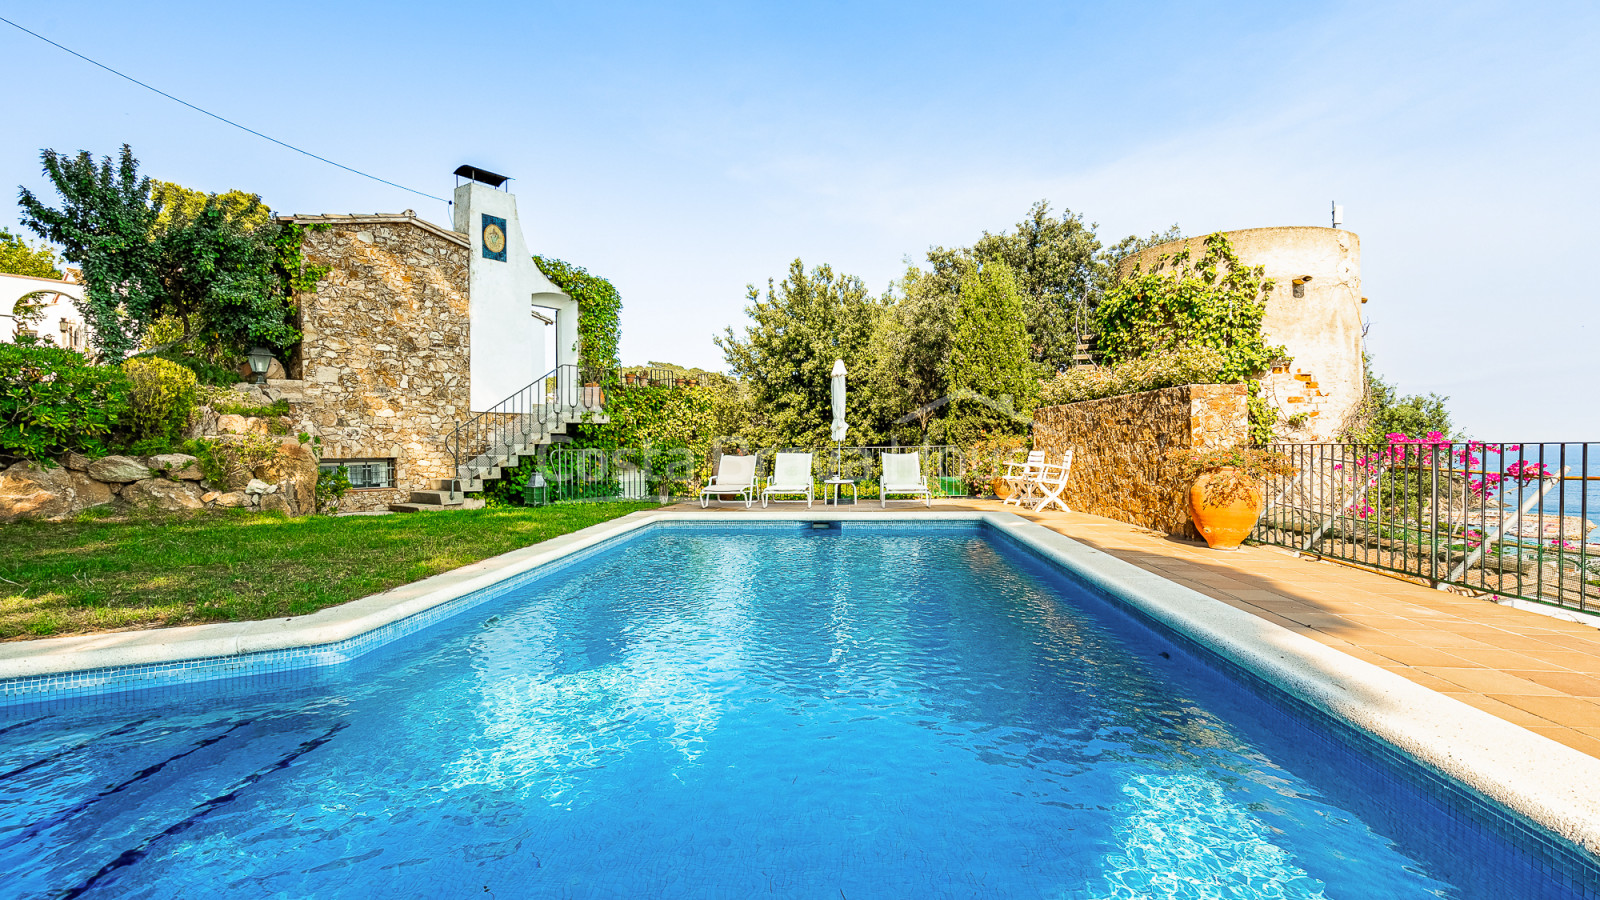 Casa amb piscina a Llafranc a només 500 m de la platja